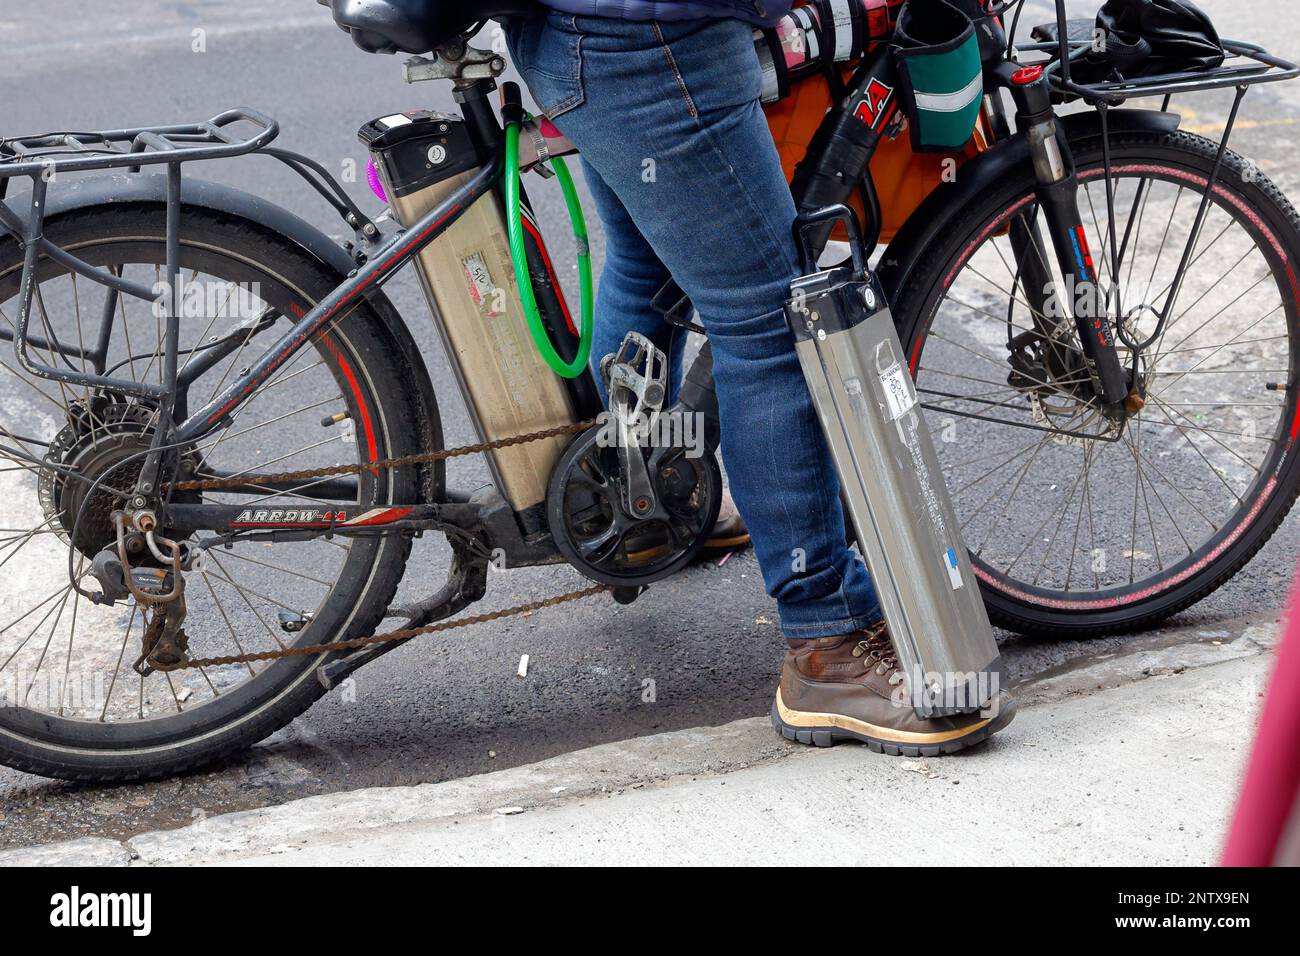 Batteries lithium-ion e-bike transportées par un messager de livraison de nourriture ; une sur le vélo électrique et une batterie de rechange par son pied. Banque D'Images